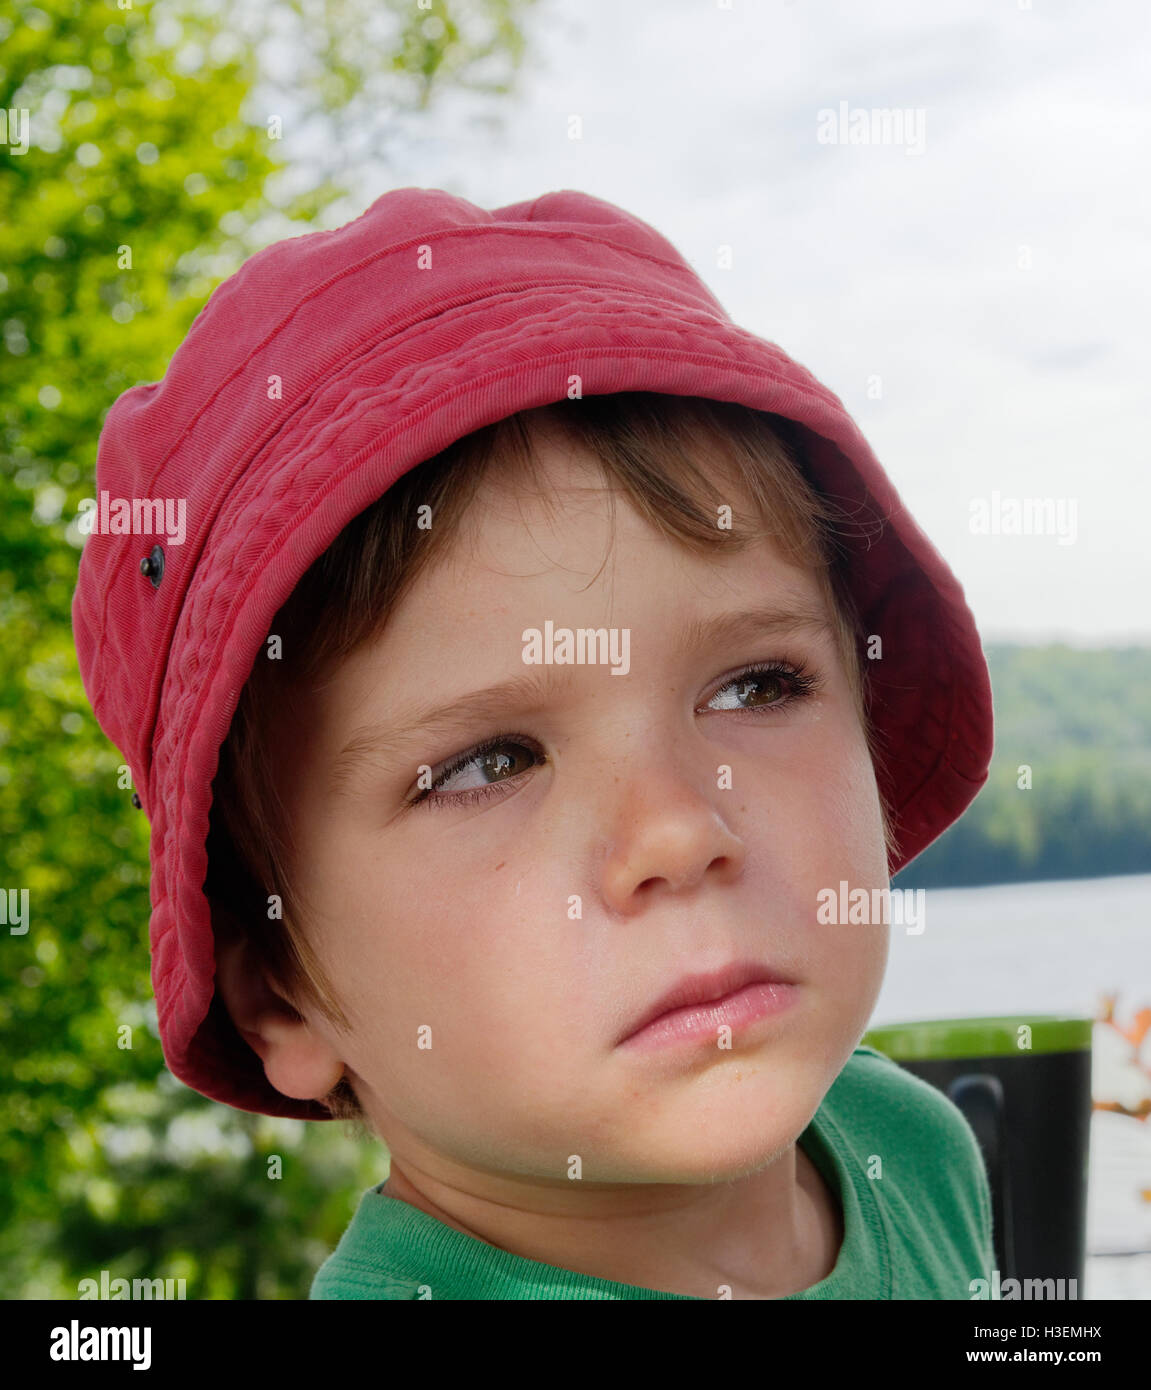 Ein kleiner Junge (4 Jahre alt), seine Mutter ein böser Blick, nachdem sie sein Gesicht gegen seine Wünsche suncreamed geben. Stockfoto